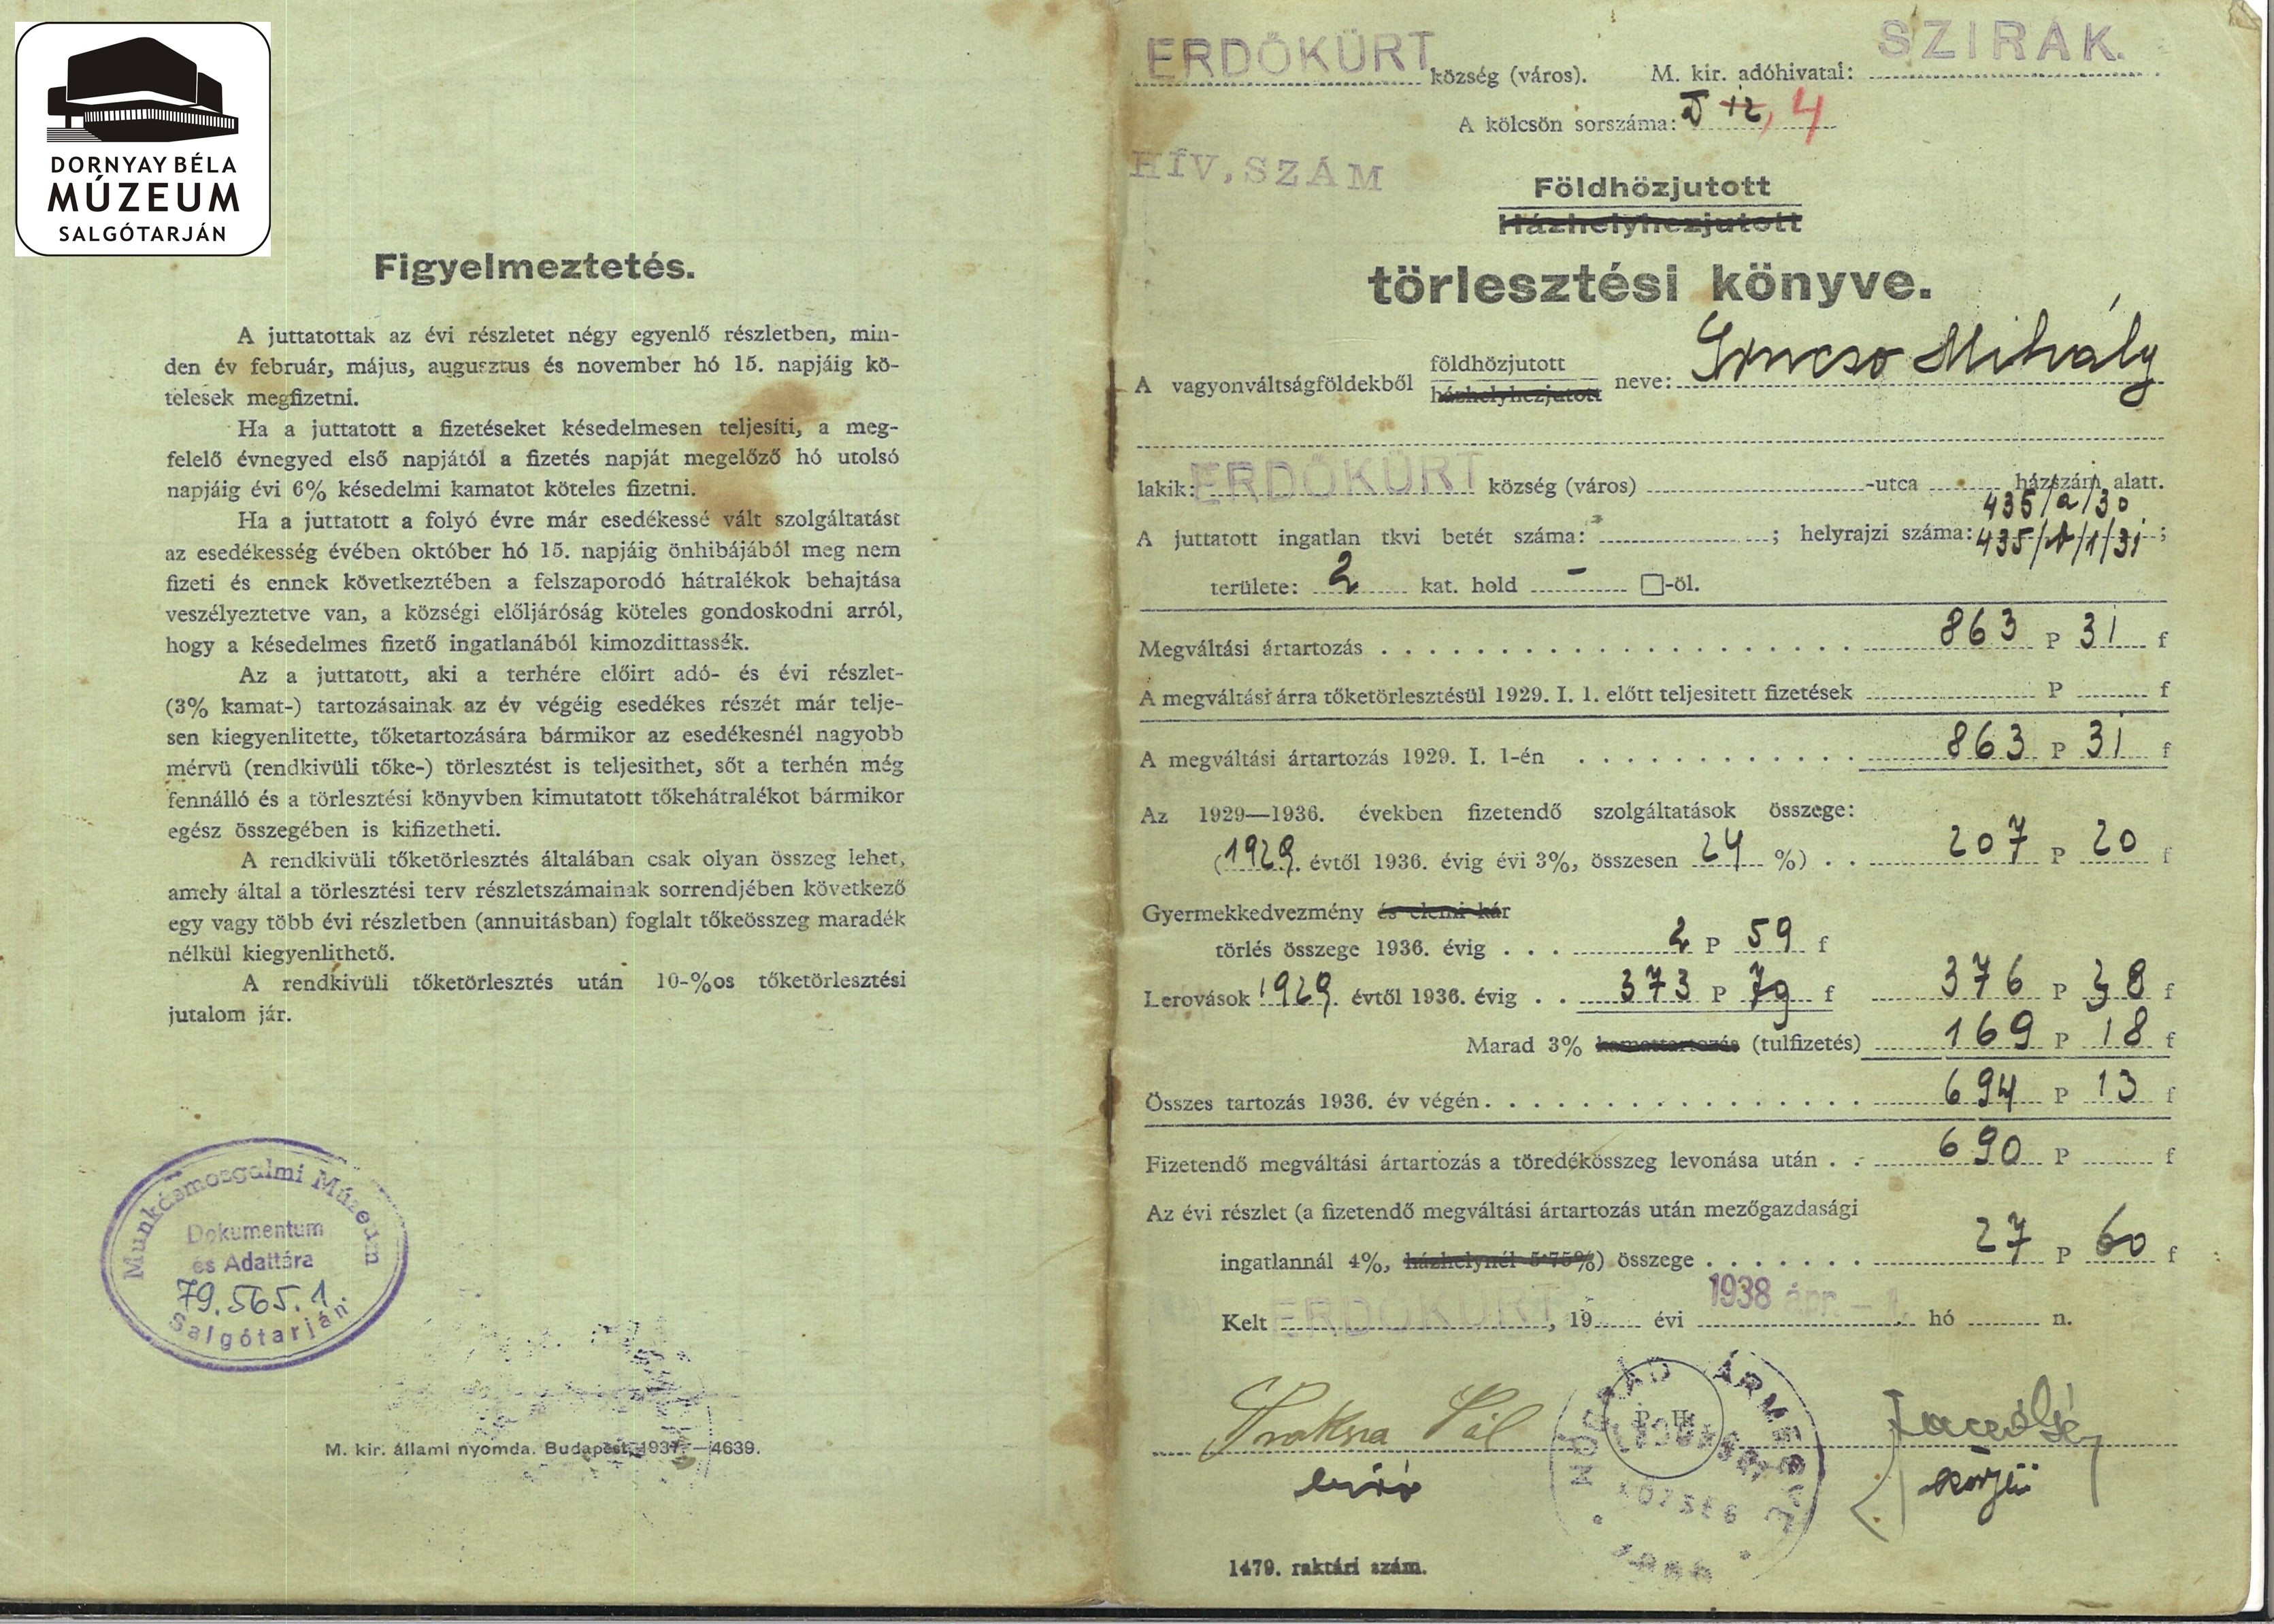 Grucsó Mihály erdőkürti lakos földhözjutott törlesztési könyve (Dornyay Béla Múzeum, Salgótarján CC BY-NC-SA)